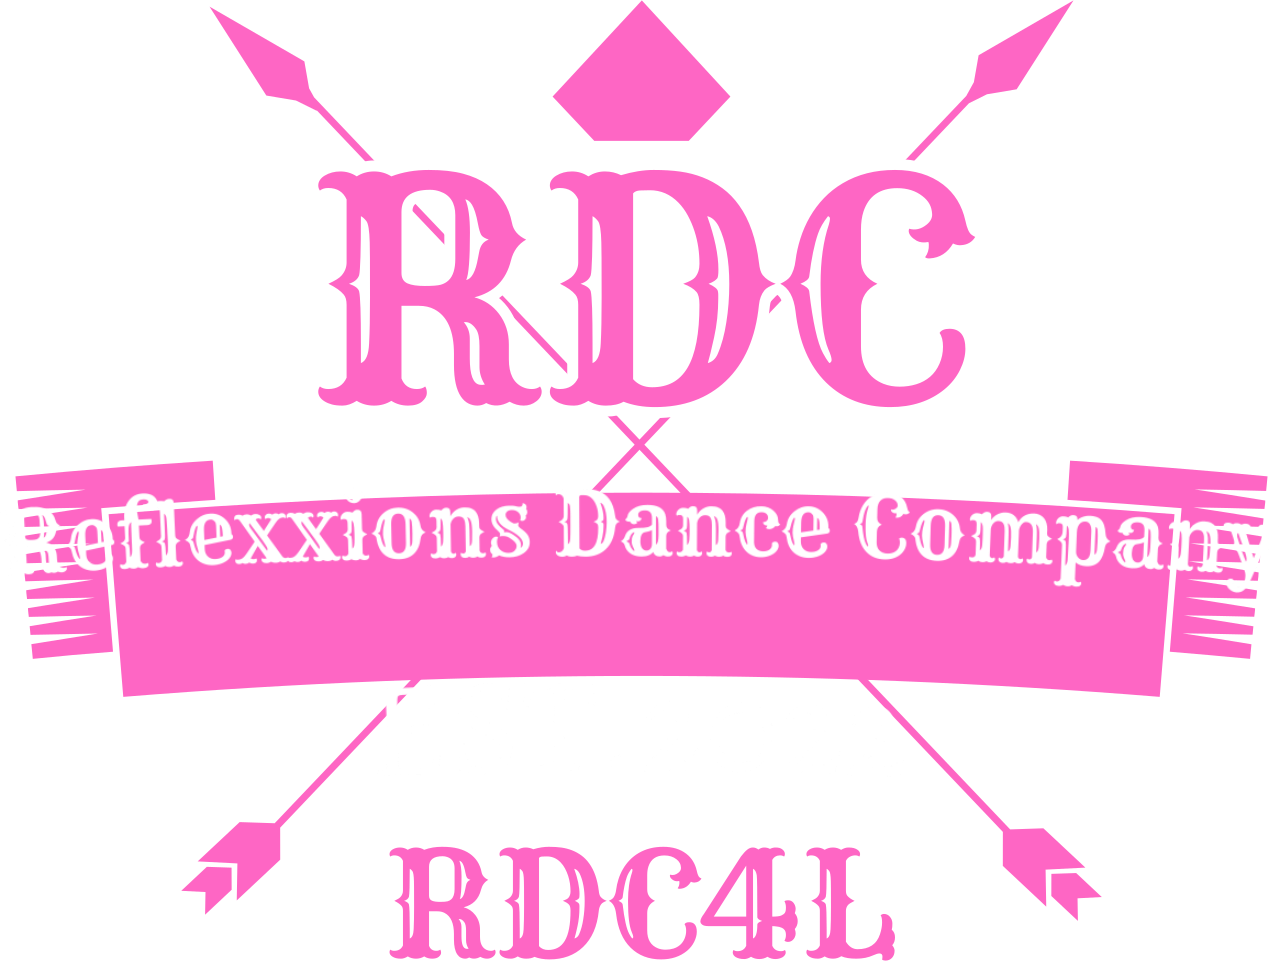 Reflexxions Dance Company's logo